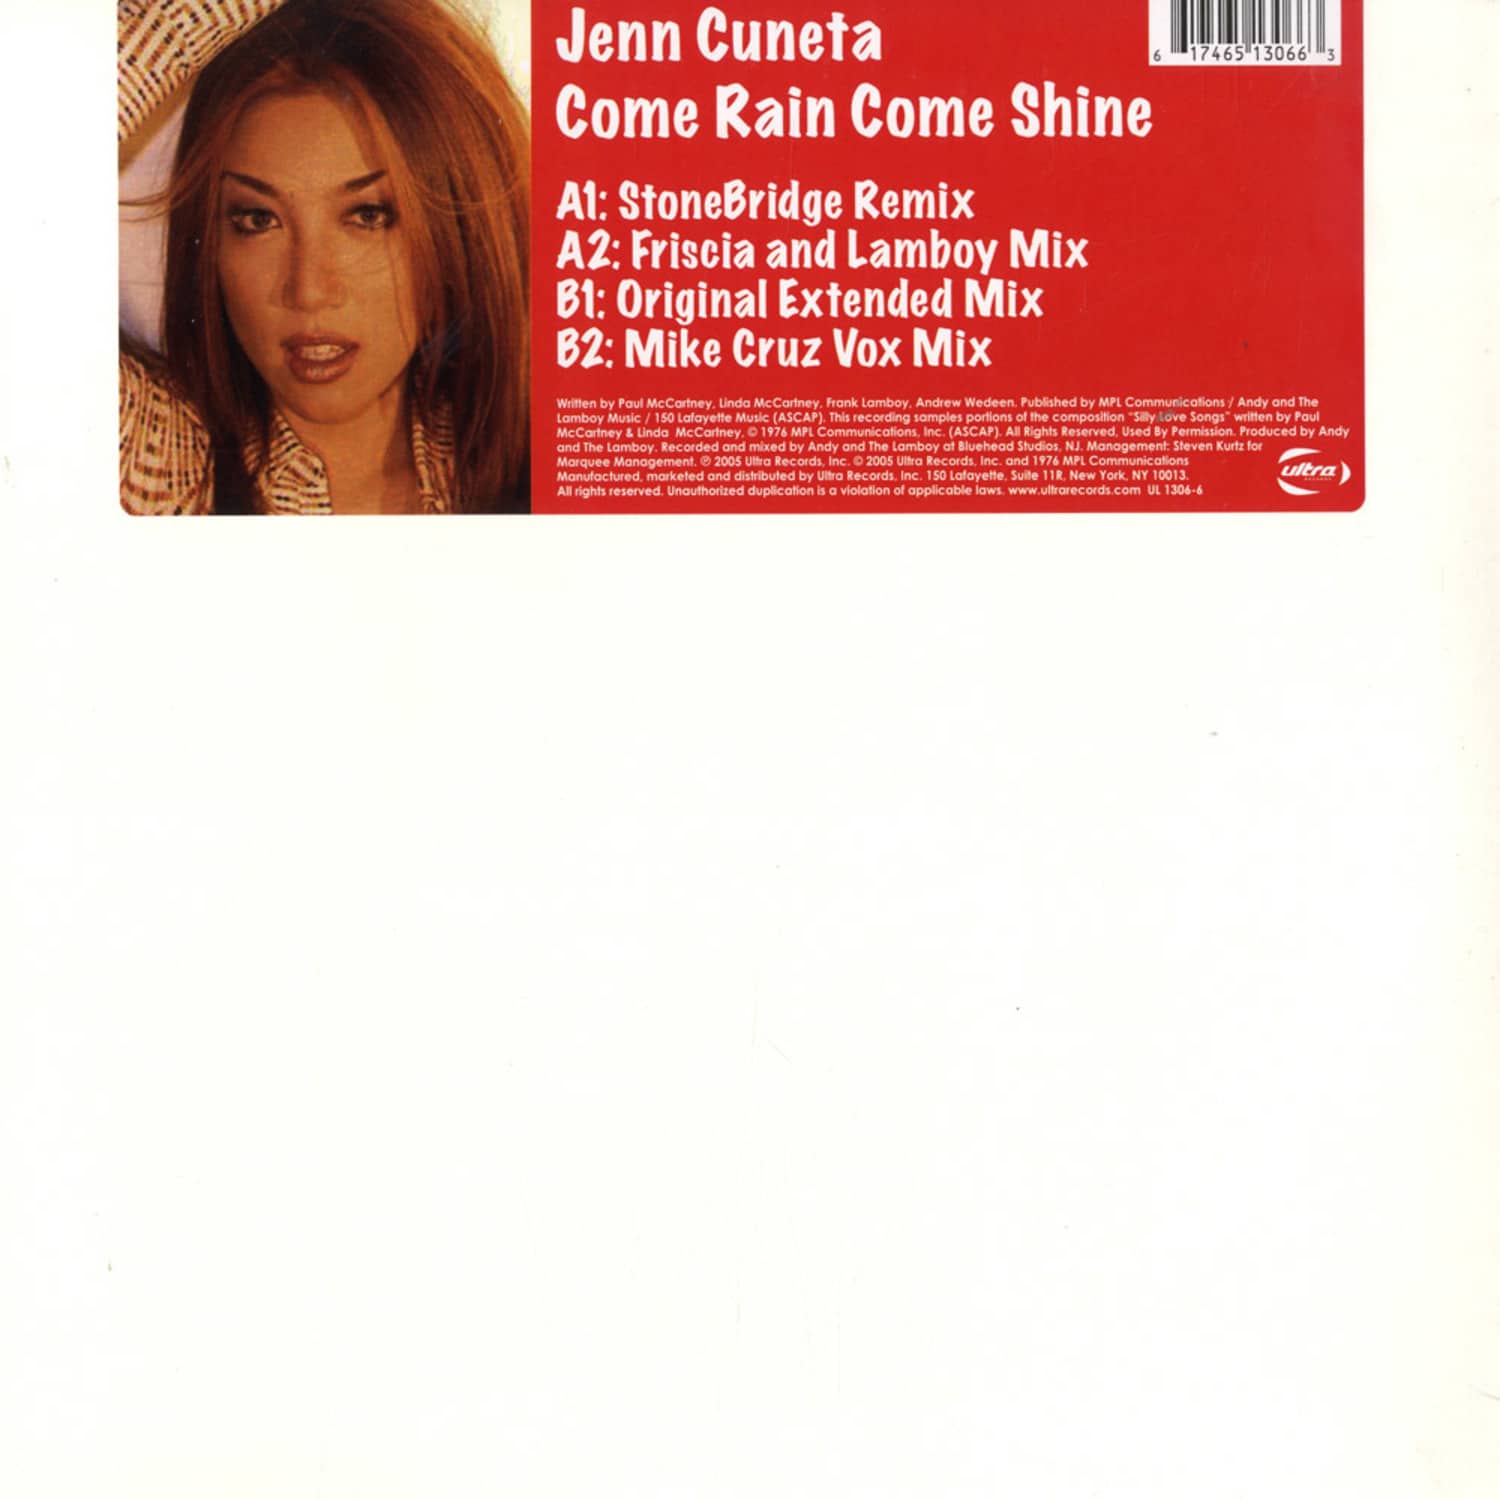 Jenn Cuneta - COME RAIN COME SHINE